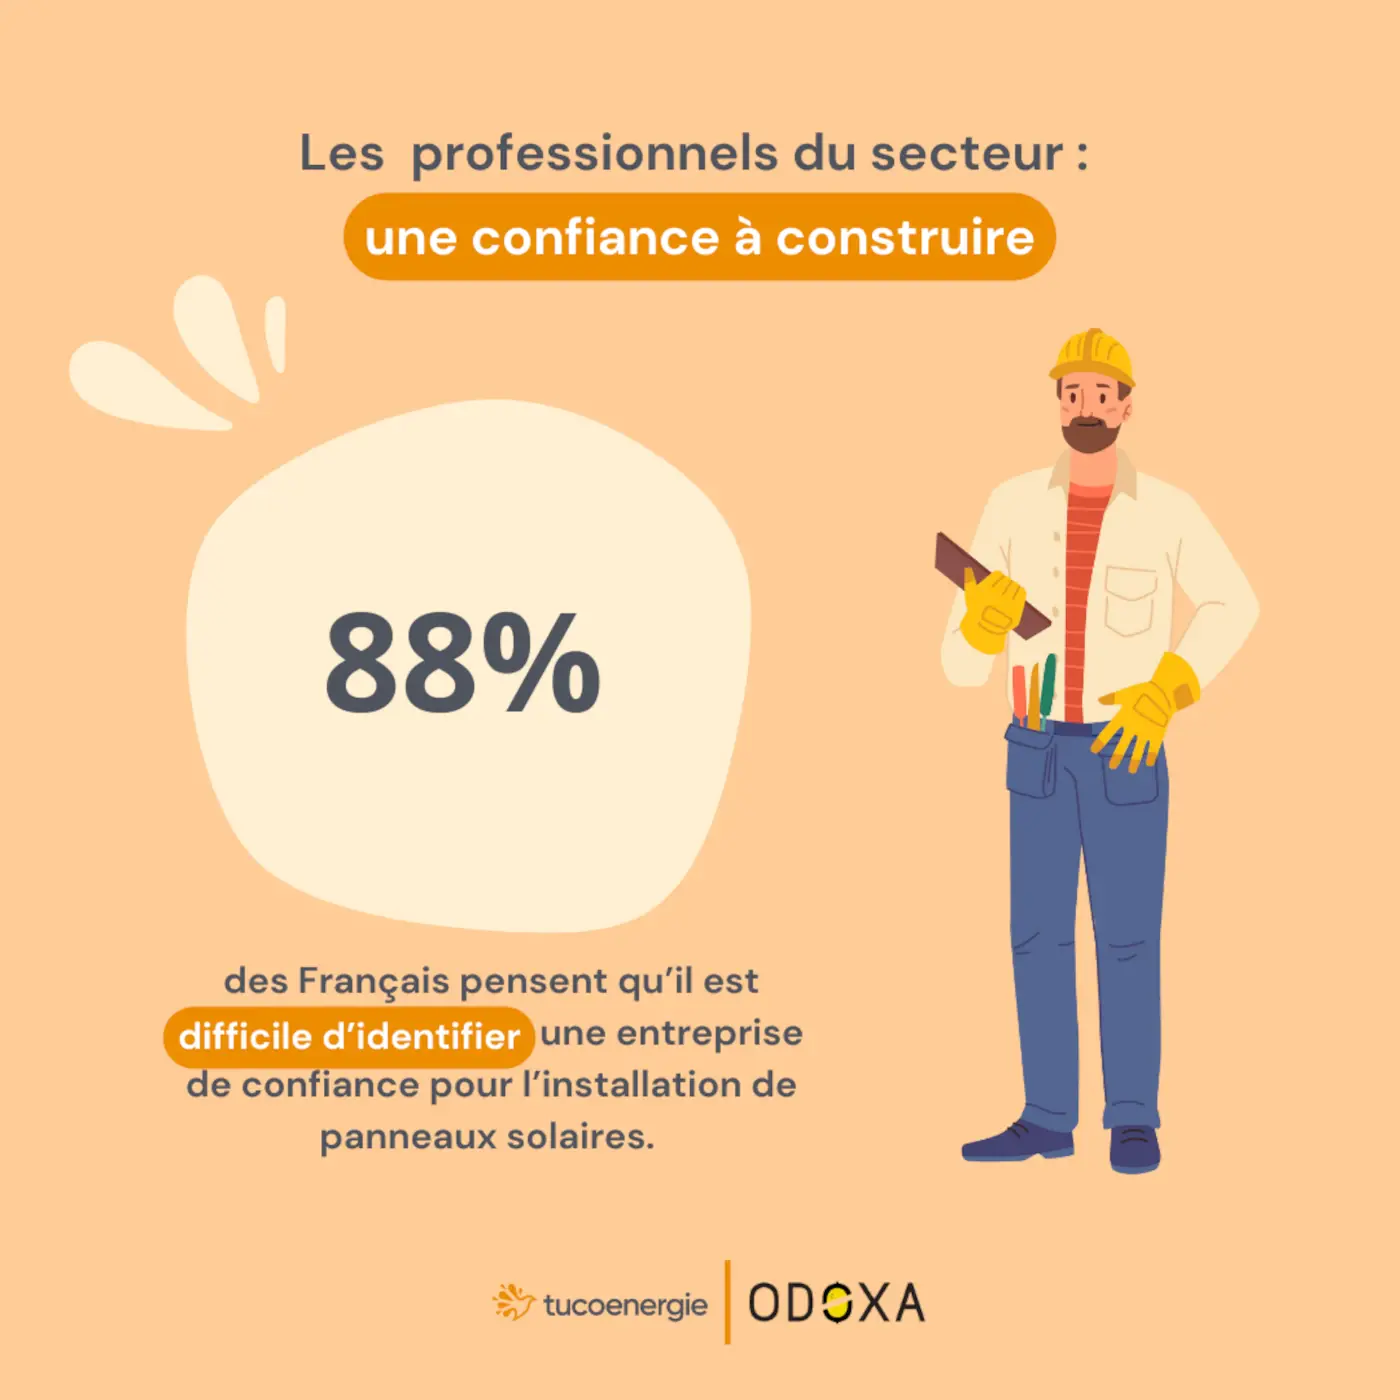 pour 88% des Français, il est difficile d'identifier une entreprise de confiance pour l'installation de panneaux solaires.